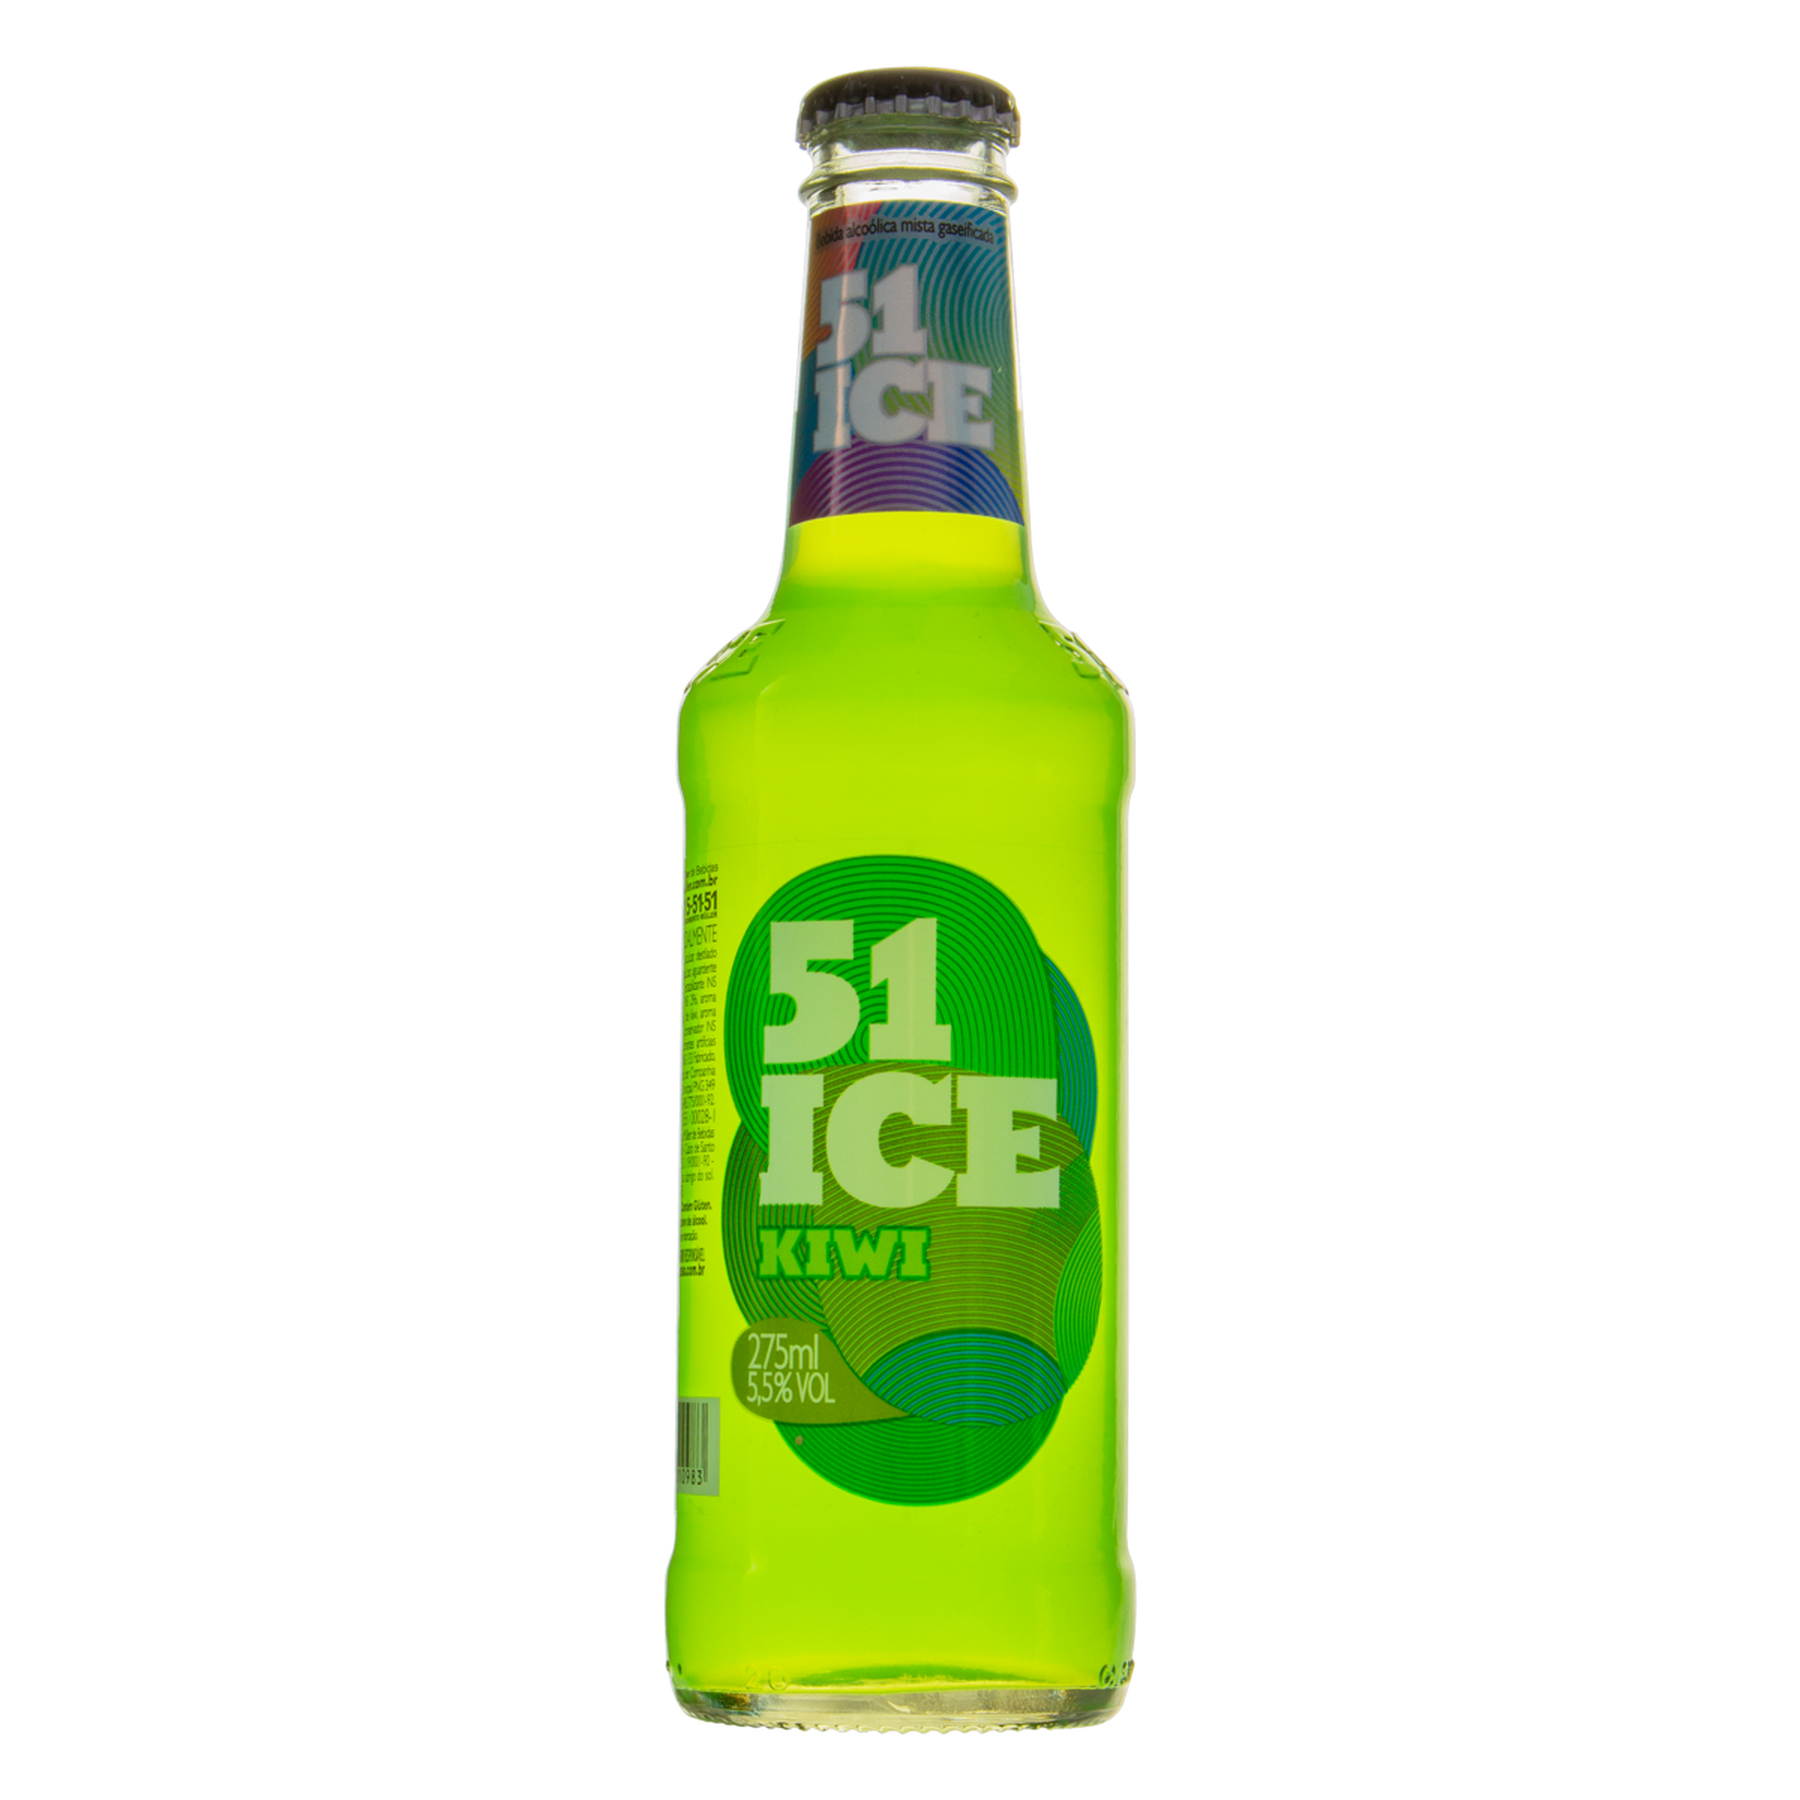 Bebida Mista Alcoólica Gaseificada Kiwi 51 Ice Garrafa 275ml